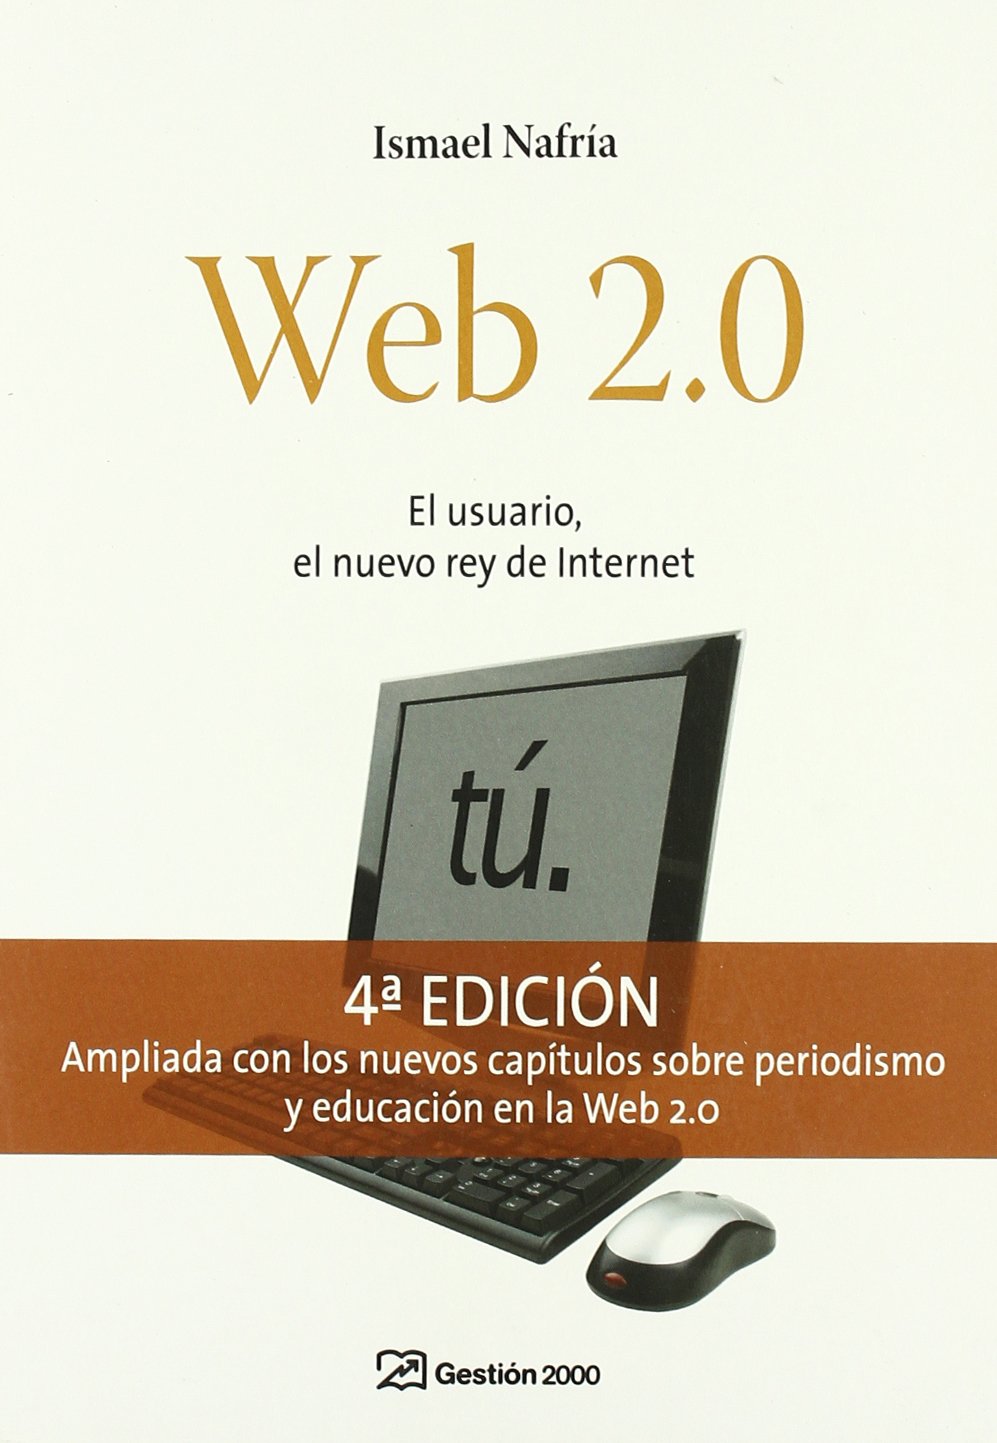 Portada del libro "Web 2.0. El usuario, el nuevo rey de Internet", de Ismael Nafría